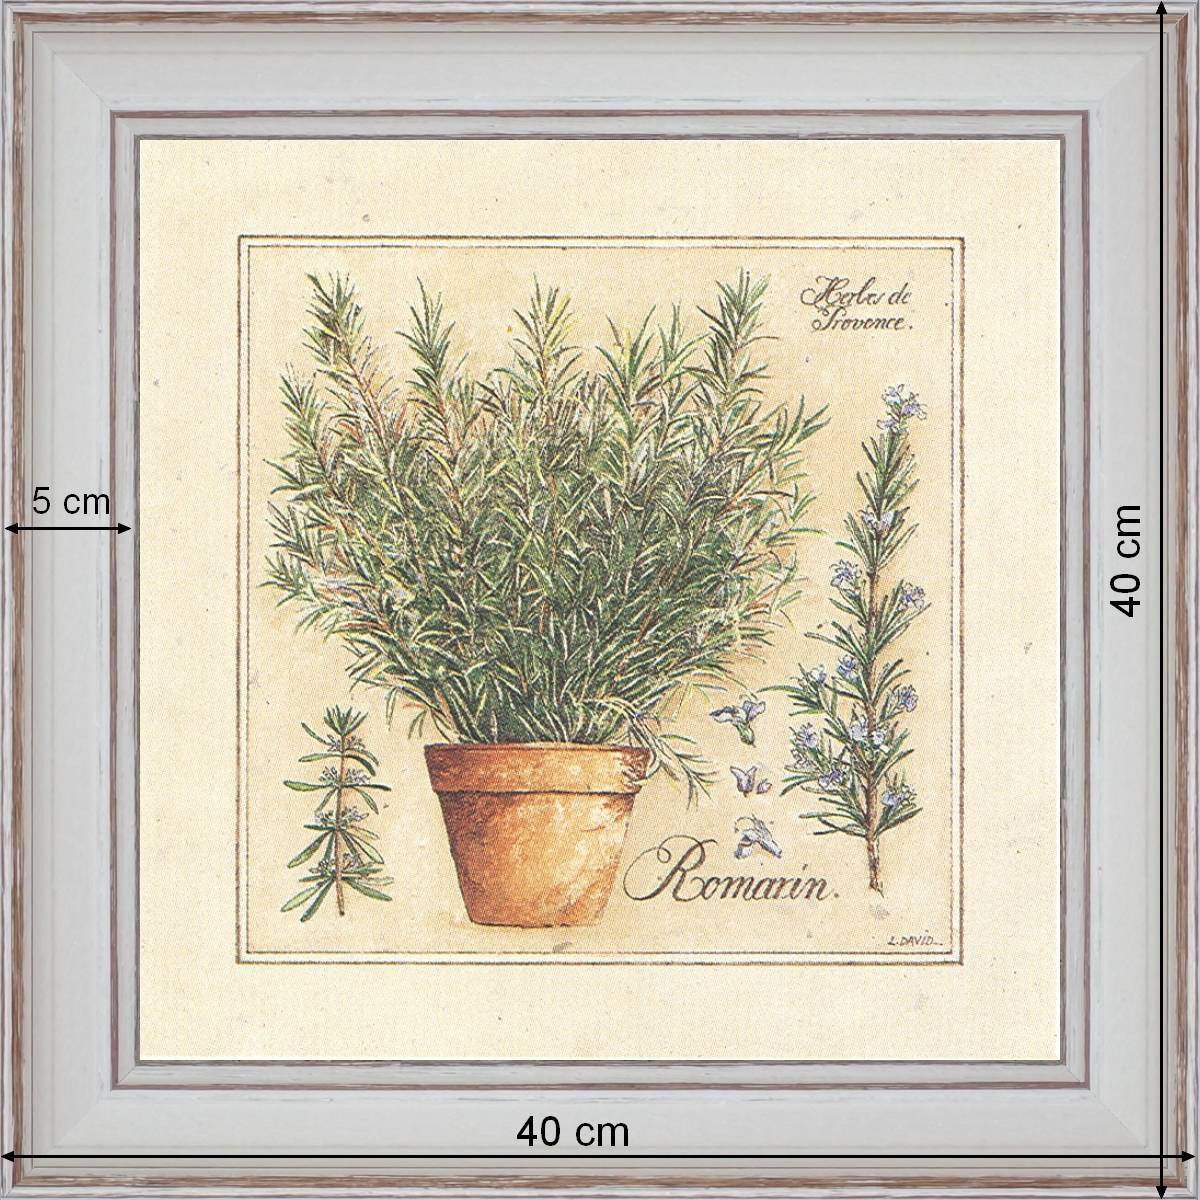 Herbes de Provence, Romarin - dimension 40 x 40 cm - Blanc cassé